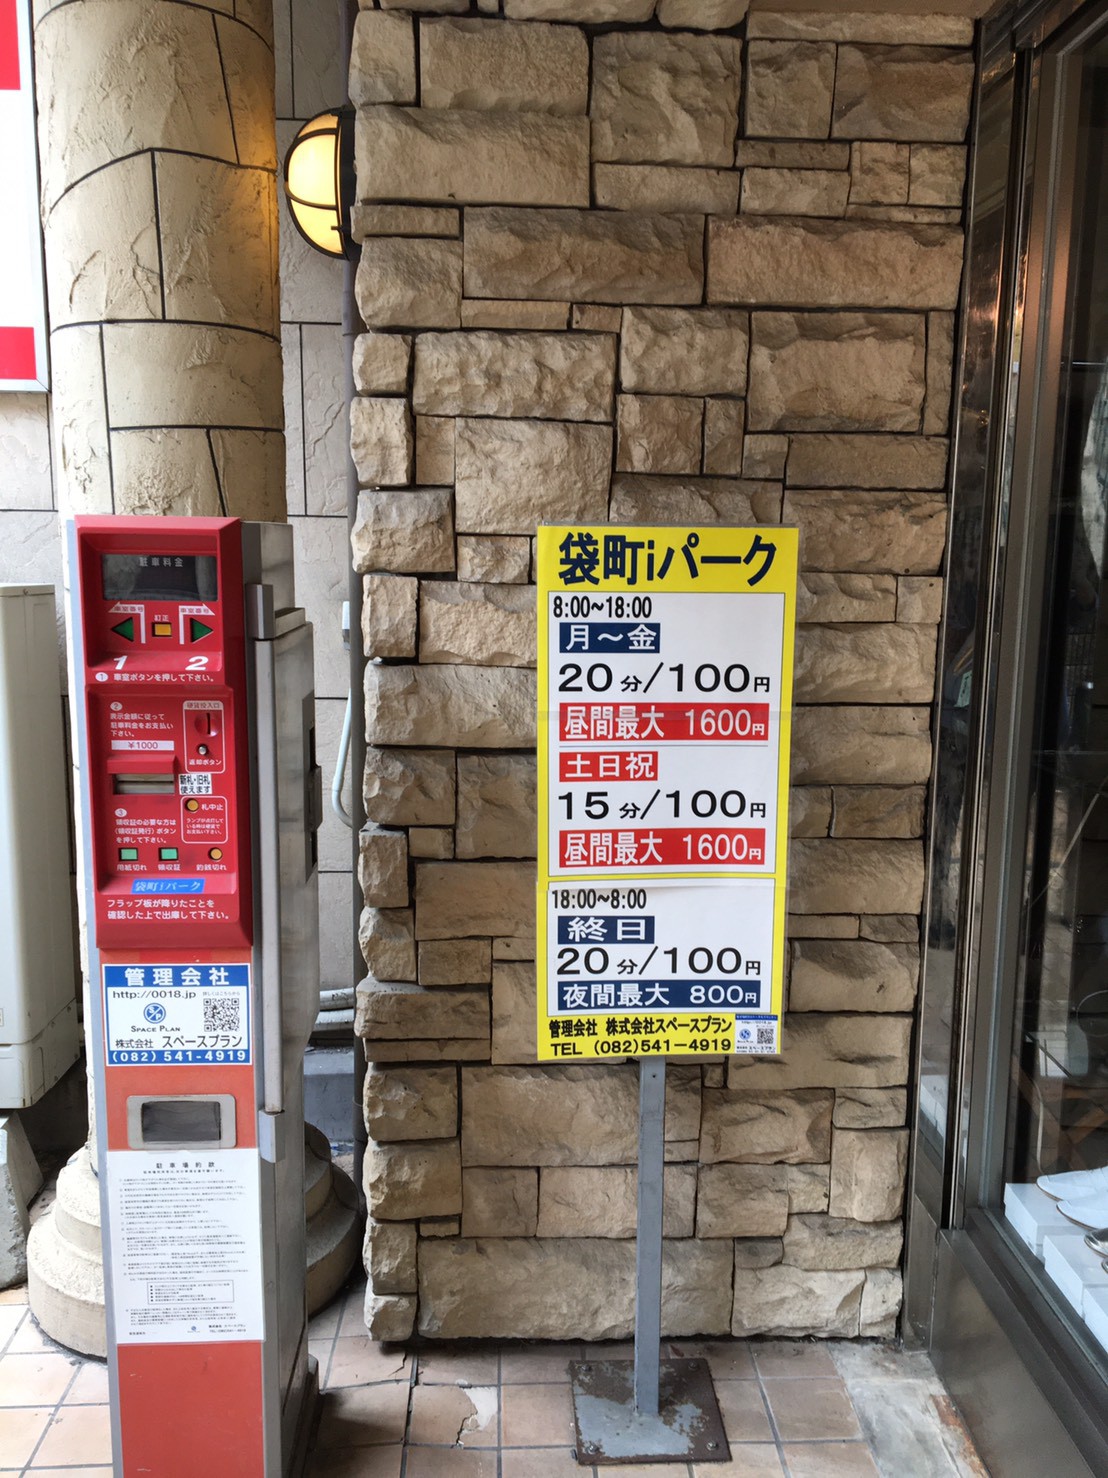 距离本通广岛购物商场（ Hondori Hiroshima Shopping Arcade # 401 ）仅几步之遥